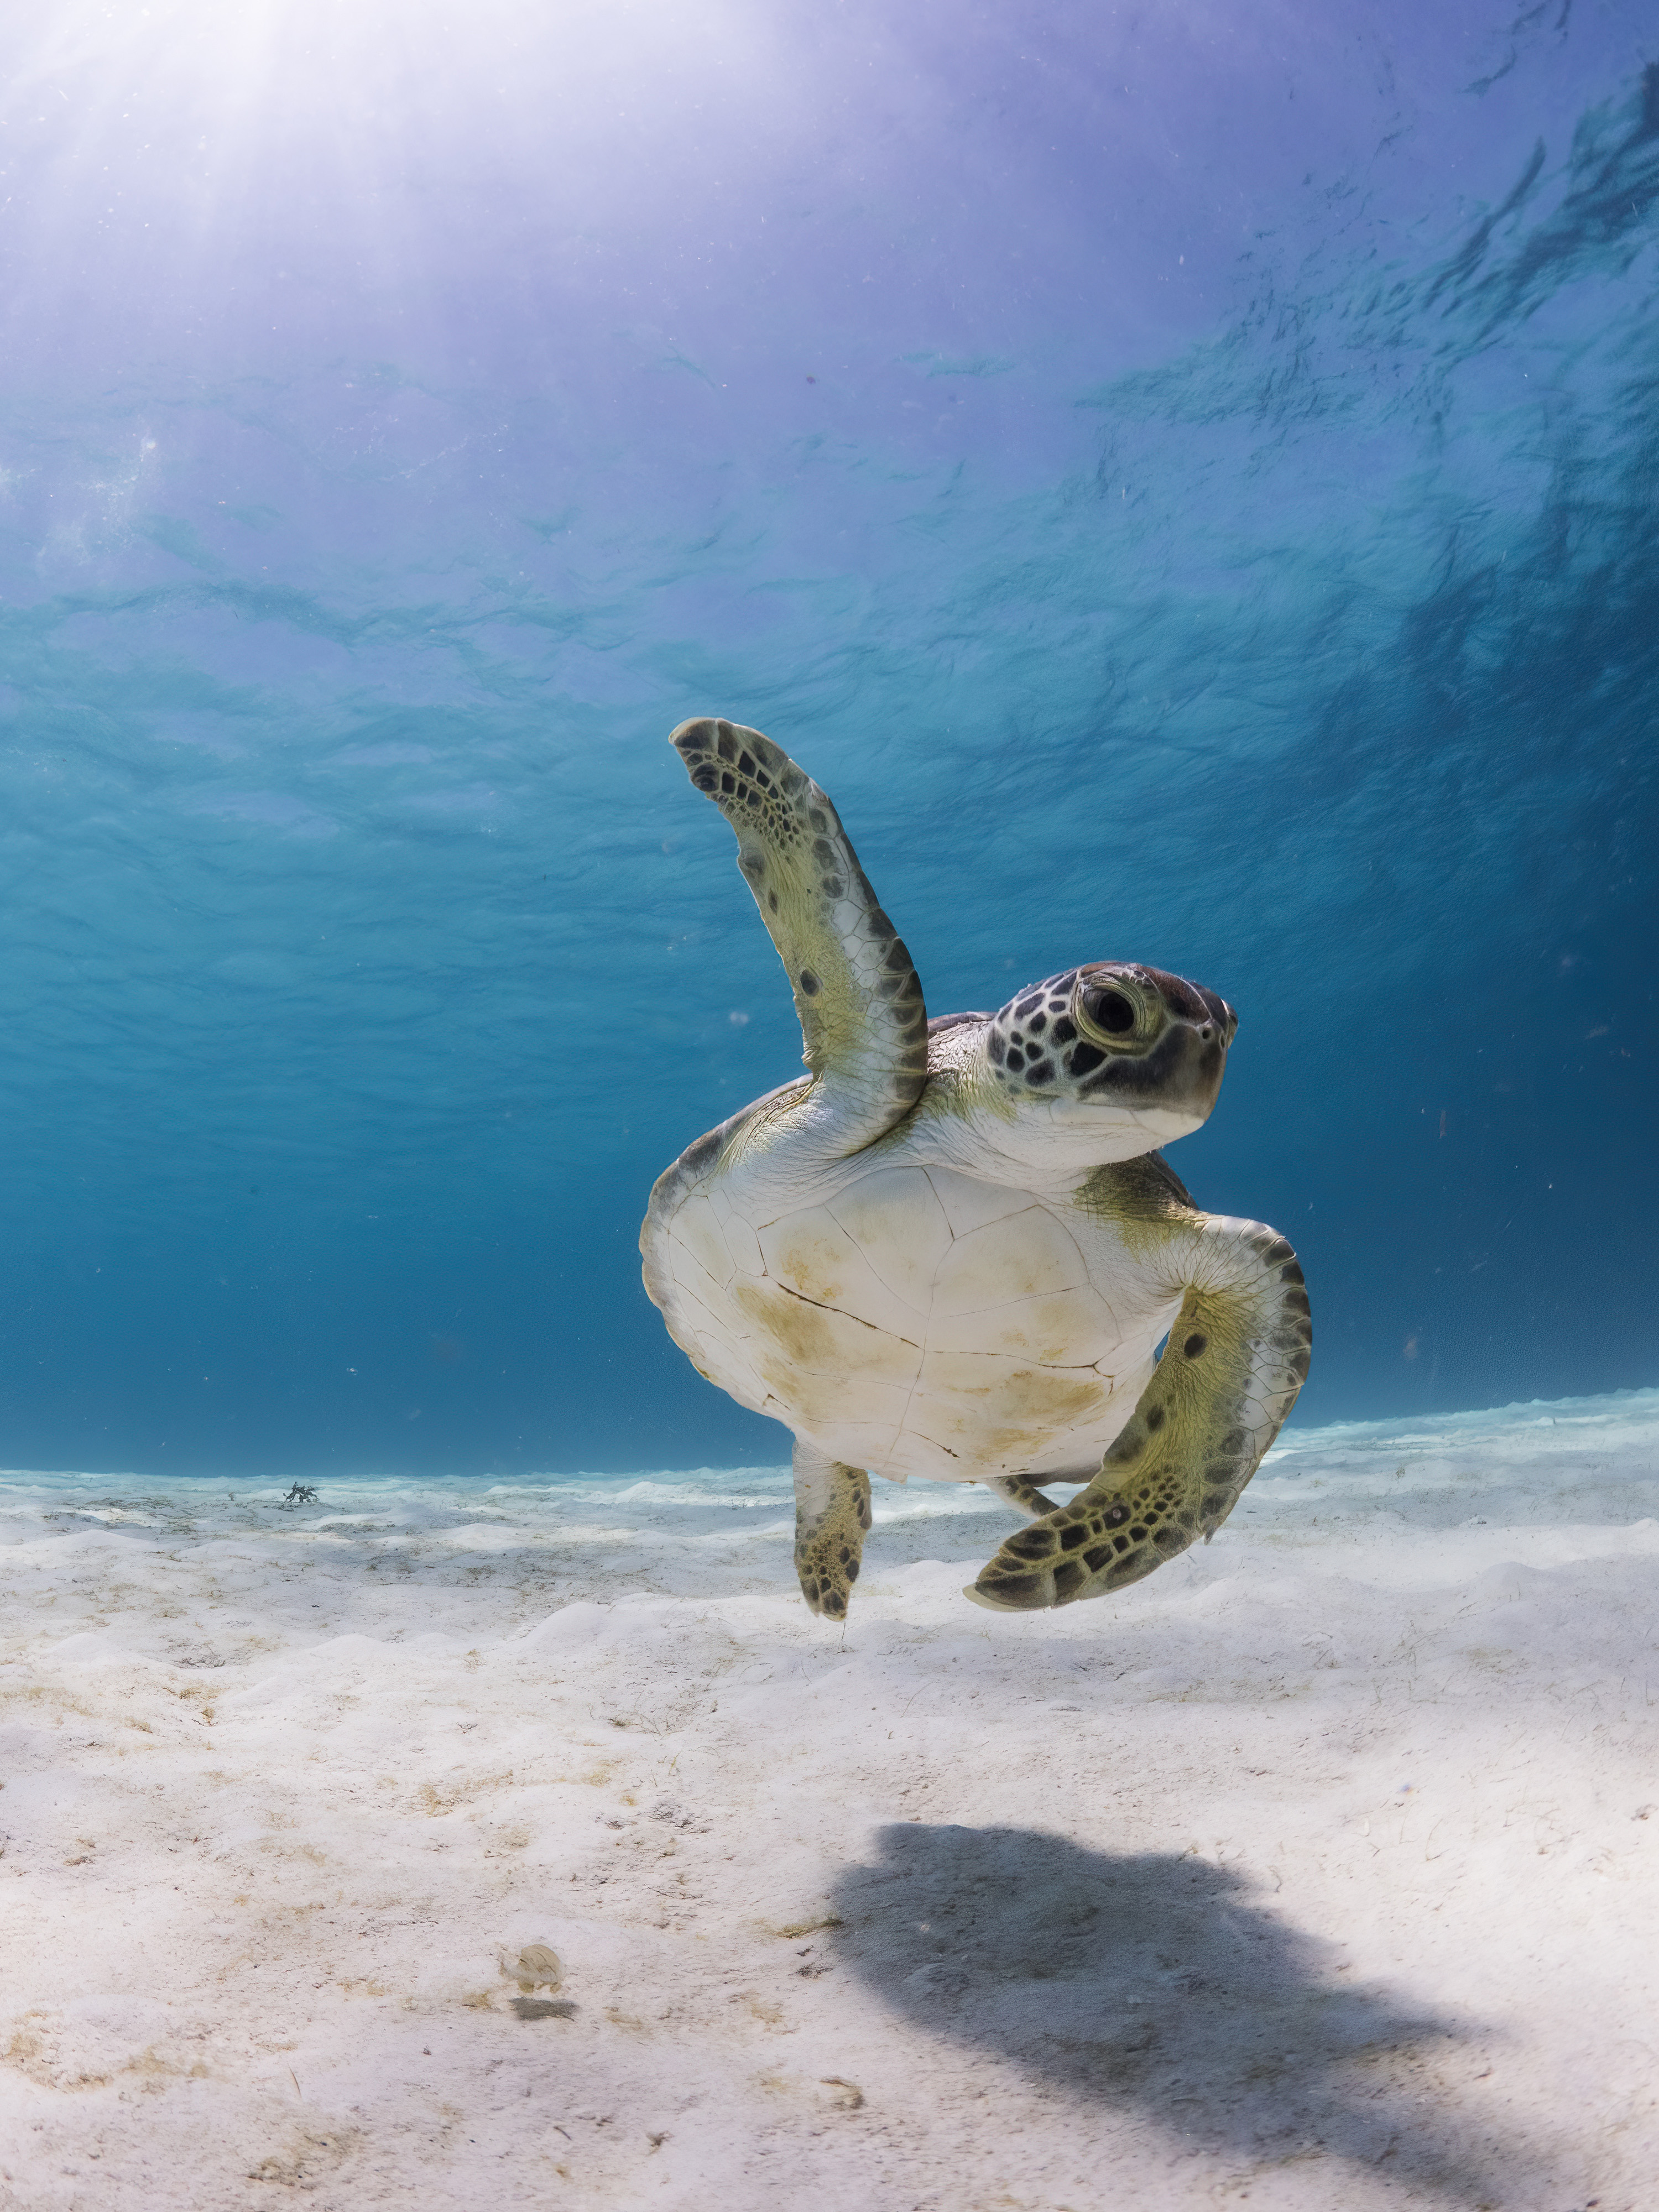 Морская черепаха плавает в чистой воде, подняв над собой один плавник.